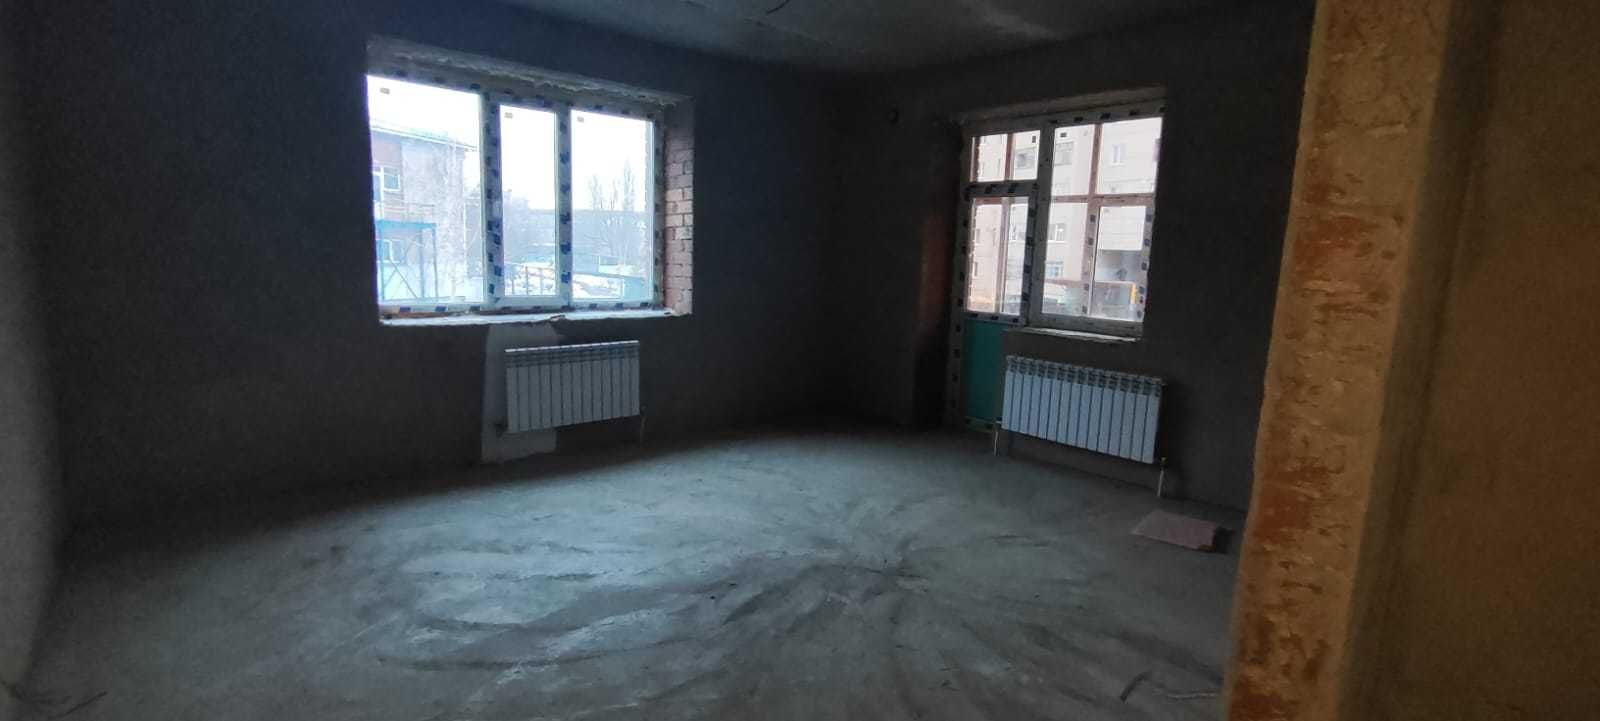 Продам двухкомнатную квартиру от застройщика ЦЕНТР города